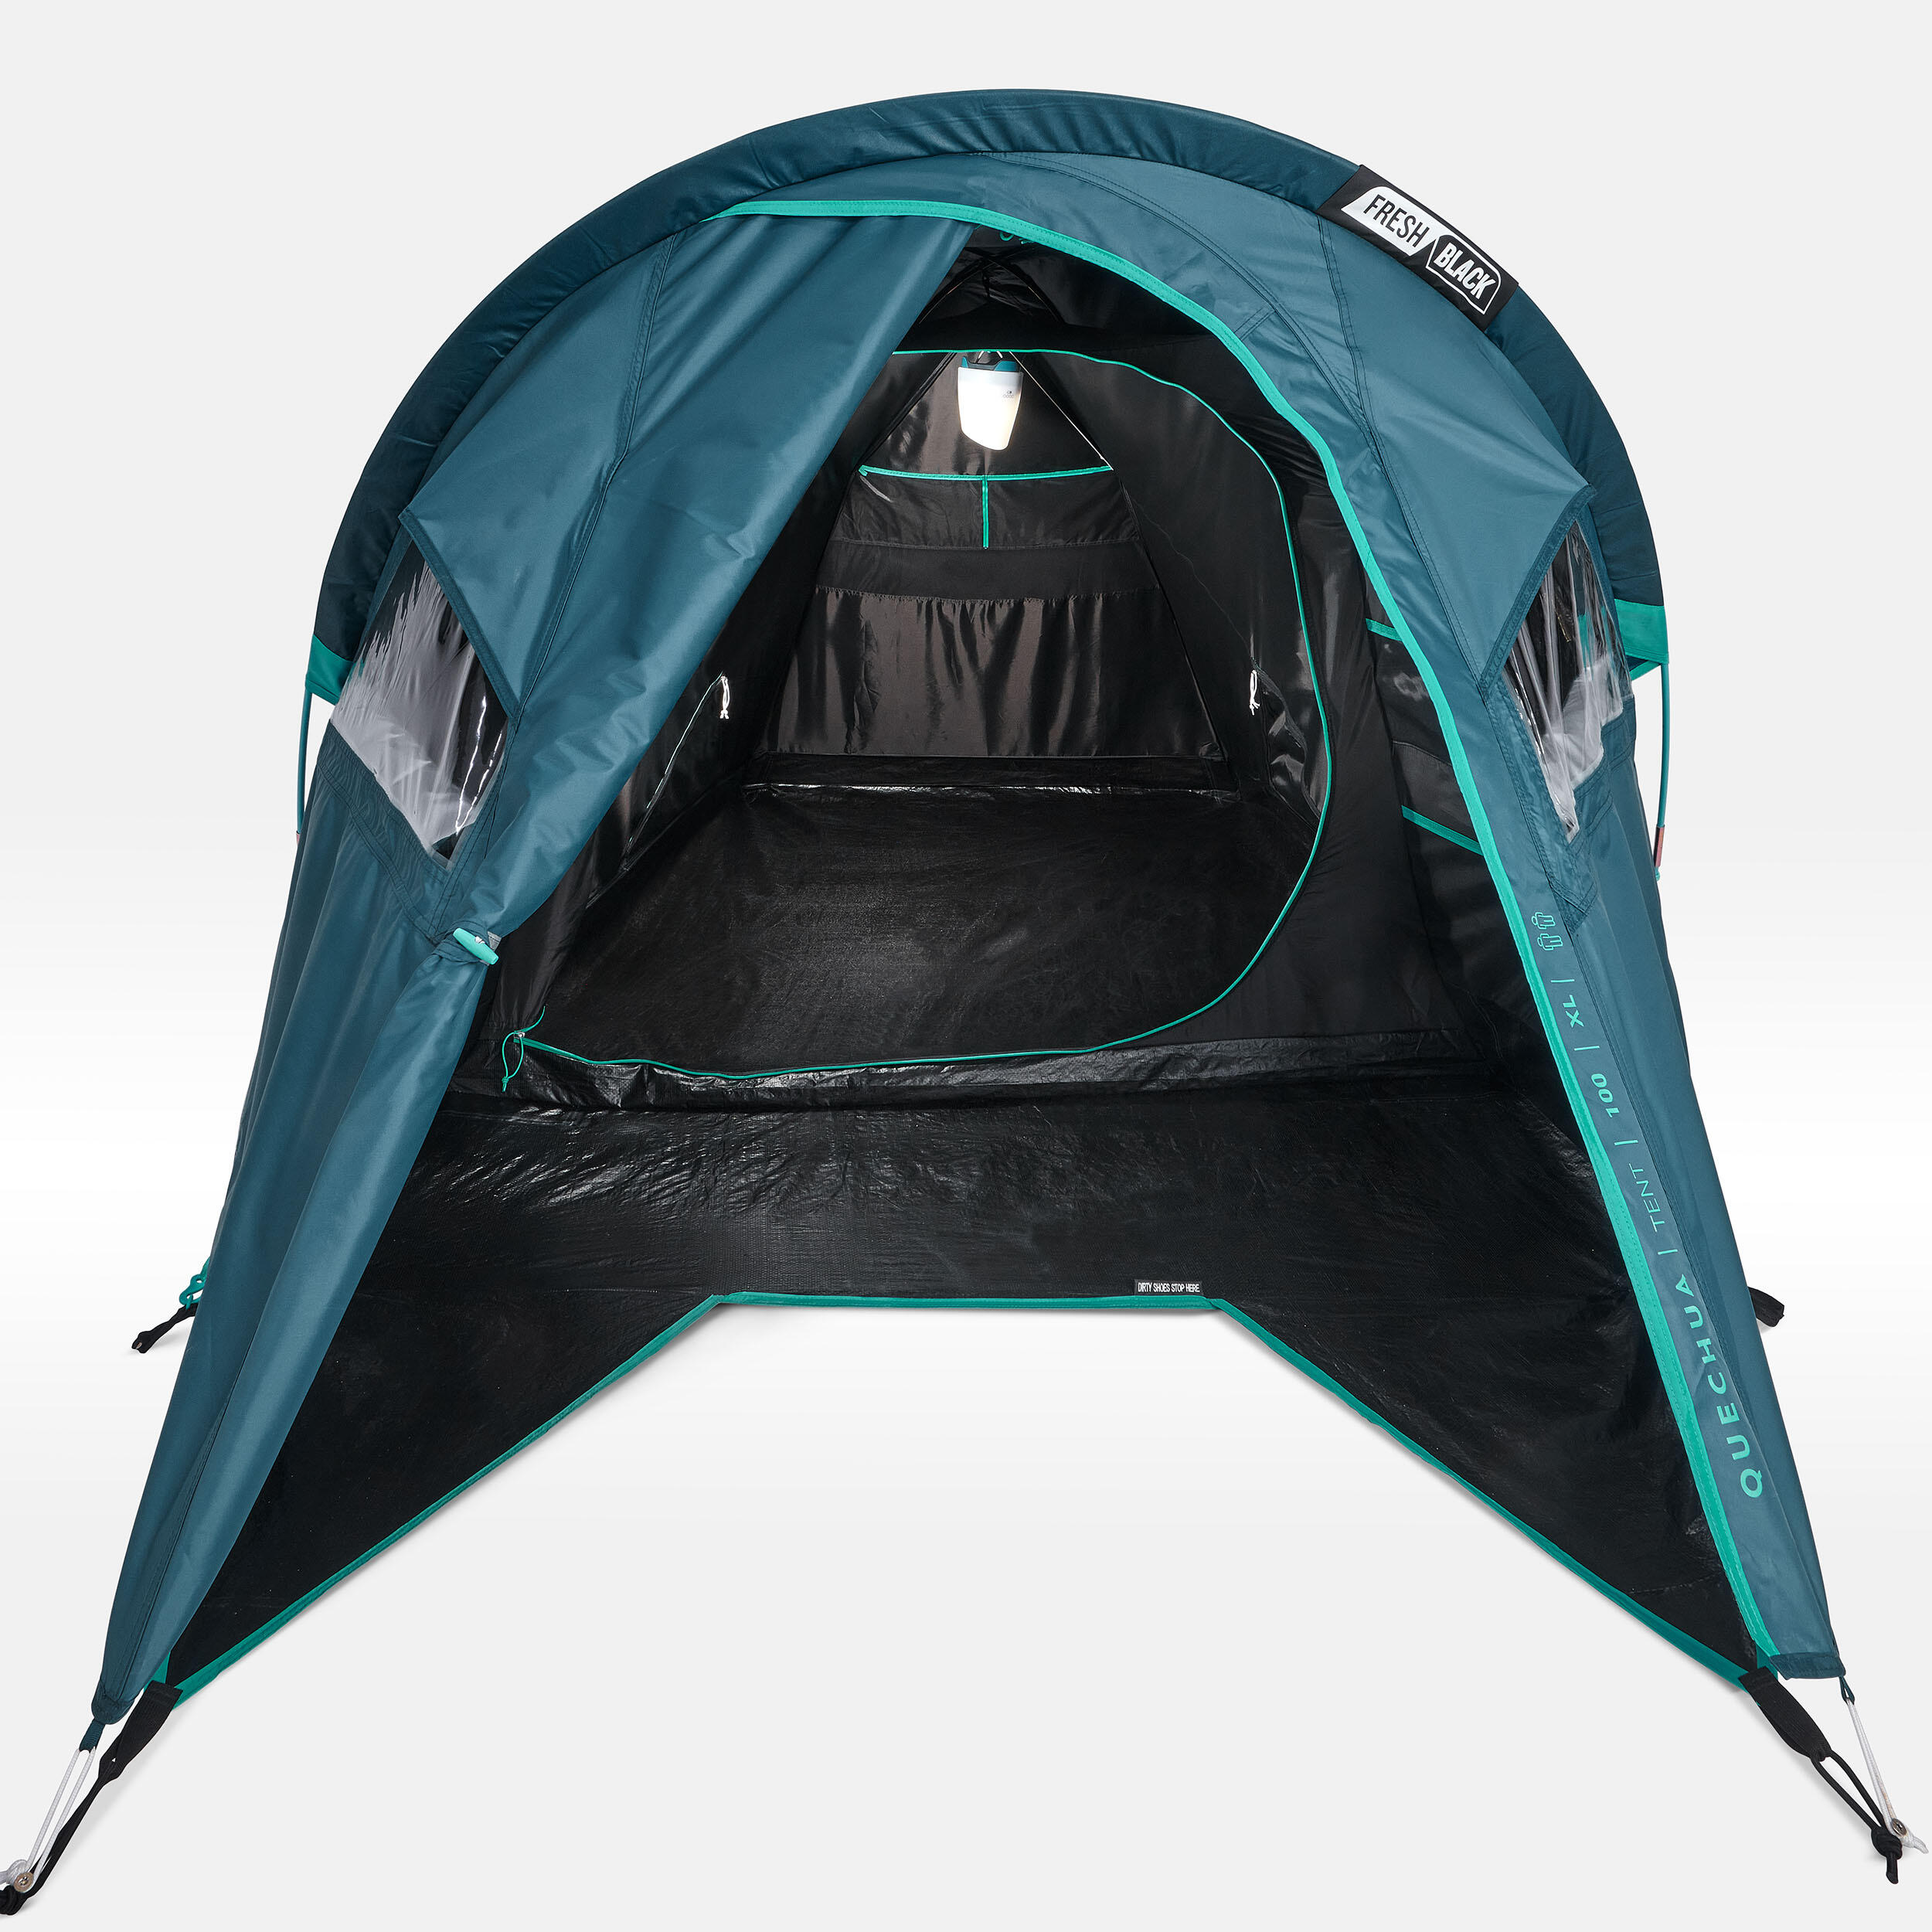 Camping tent MH100 XL - 2-P - Fresh&Black 6/17